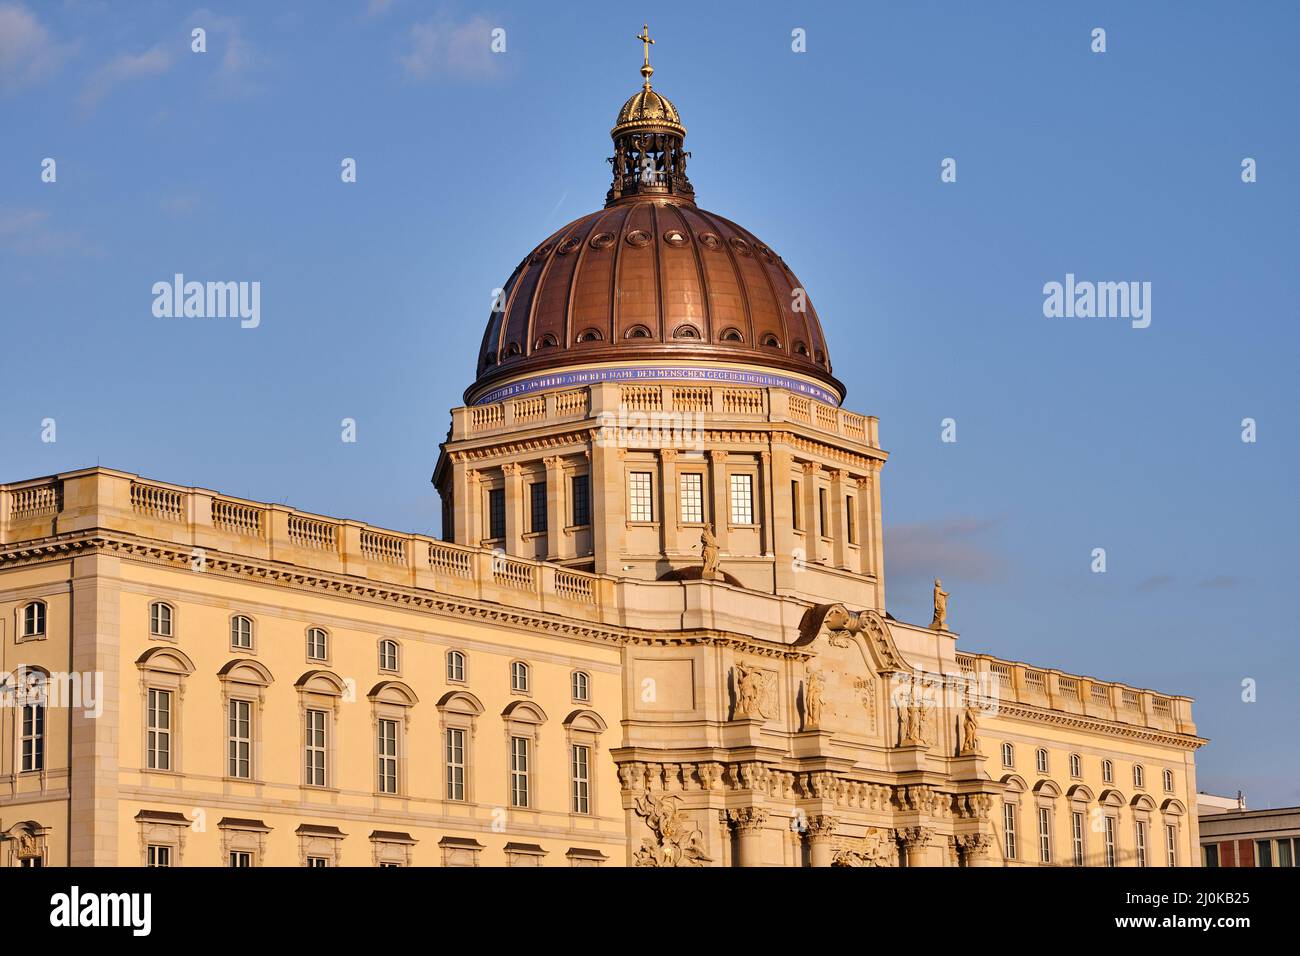 La cúpula del Palacio de la Ciudad reconstruido en Berlín justo antes de la puesta de sol Foto de stock